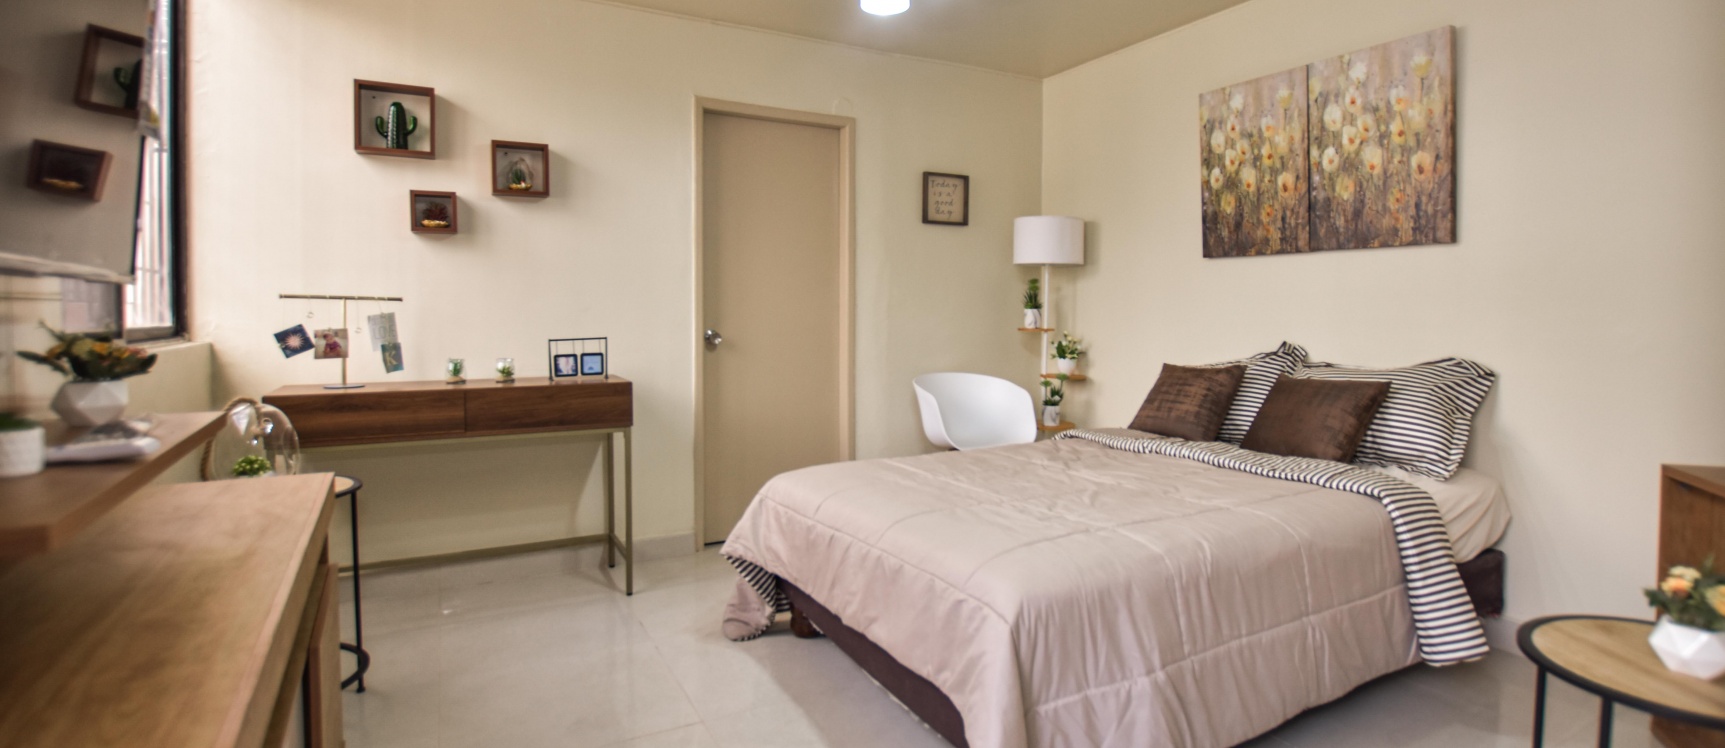 GeoBienes - Suite amoblada en alquiler ubicada en Urdesa Central - Plusvalia Guayaquil Casas de venta y alquiler Inmobiliaria Ecuador